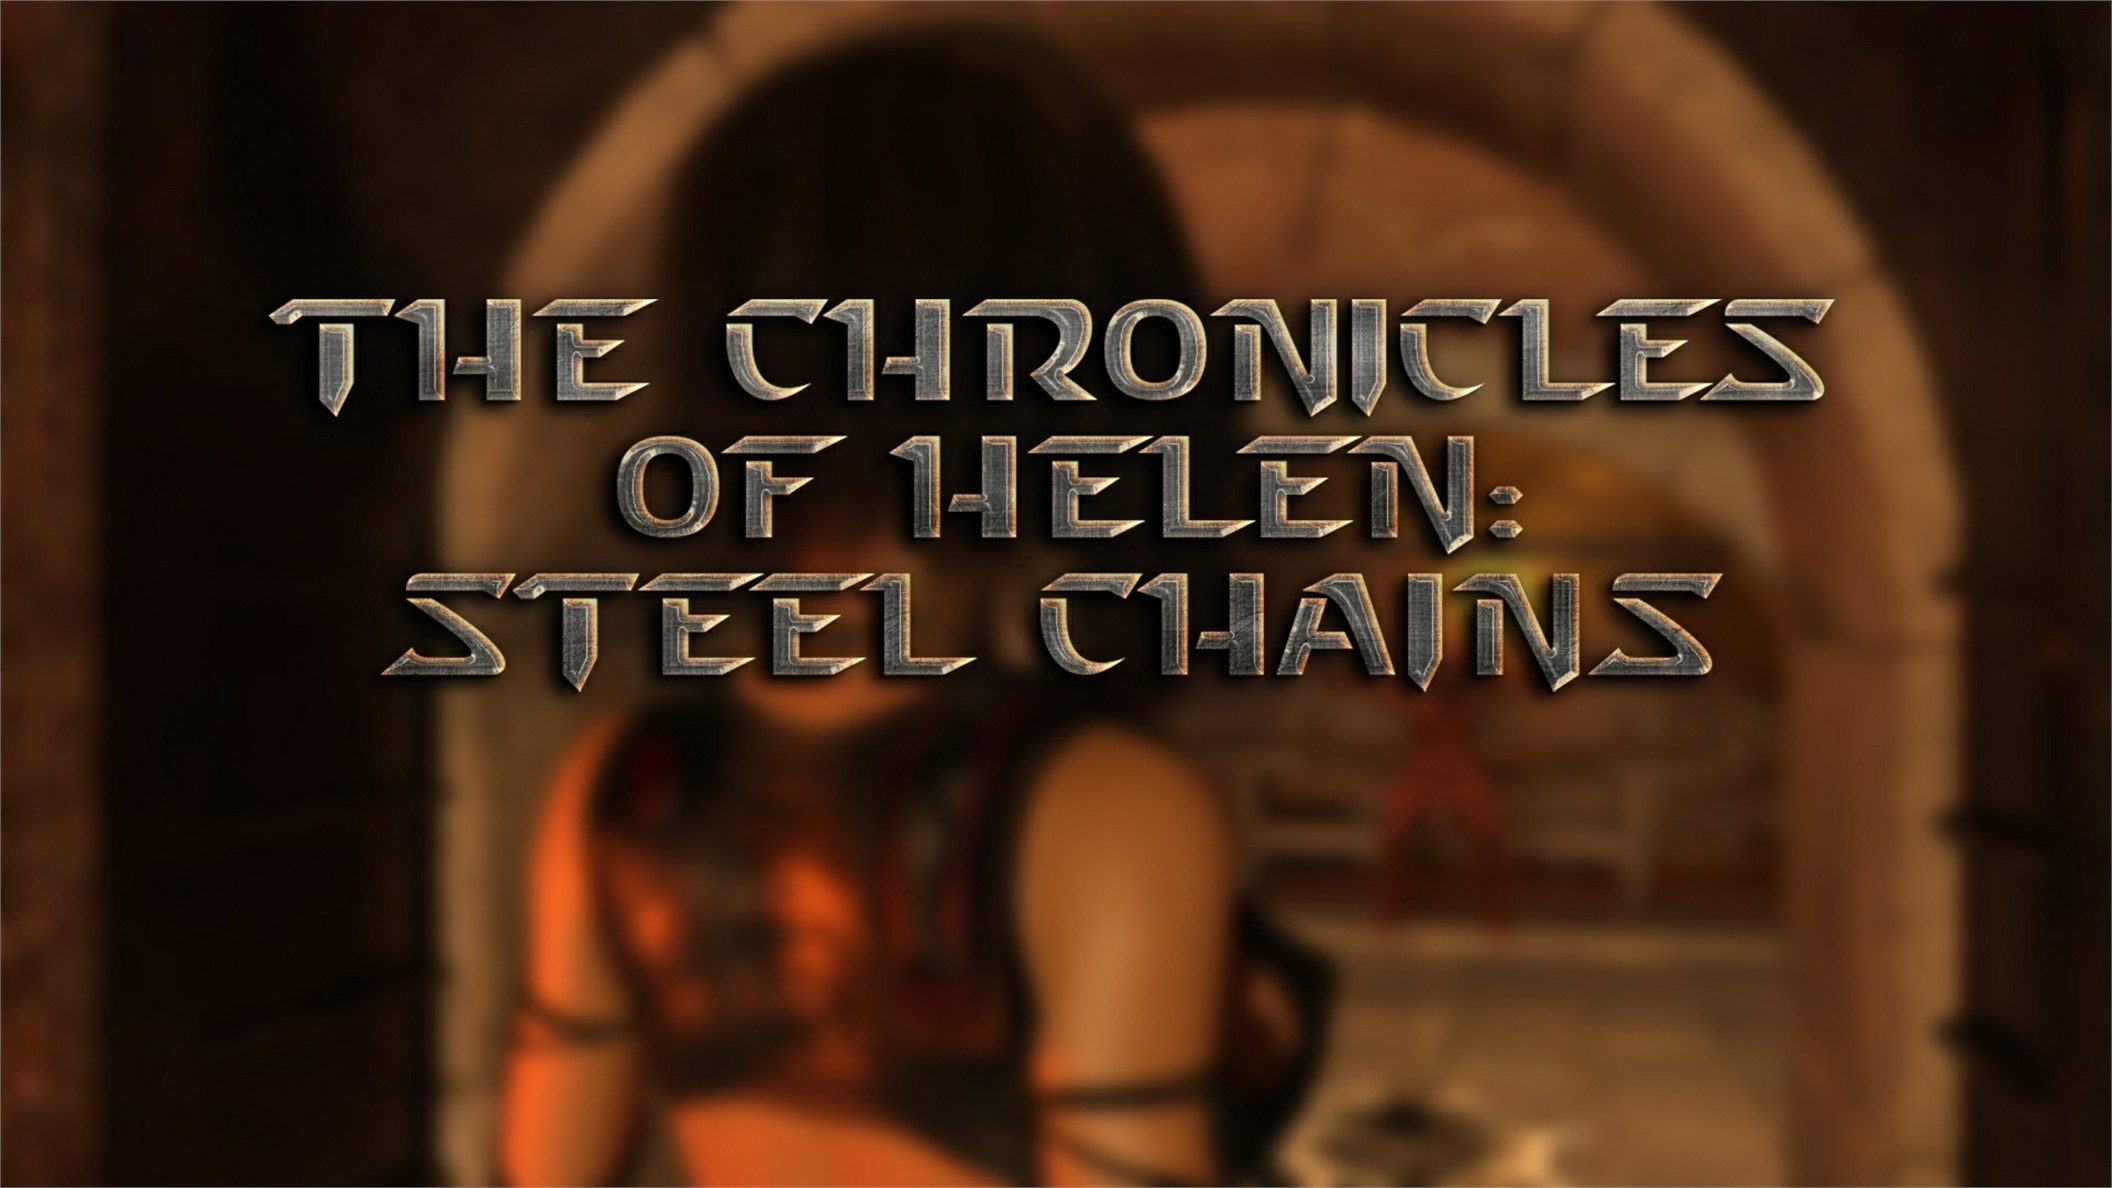 7429834 main Helen Steel chains Part 1 0000a